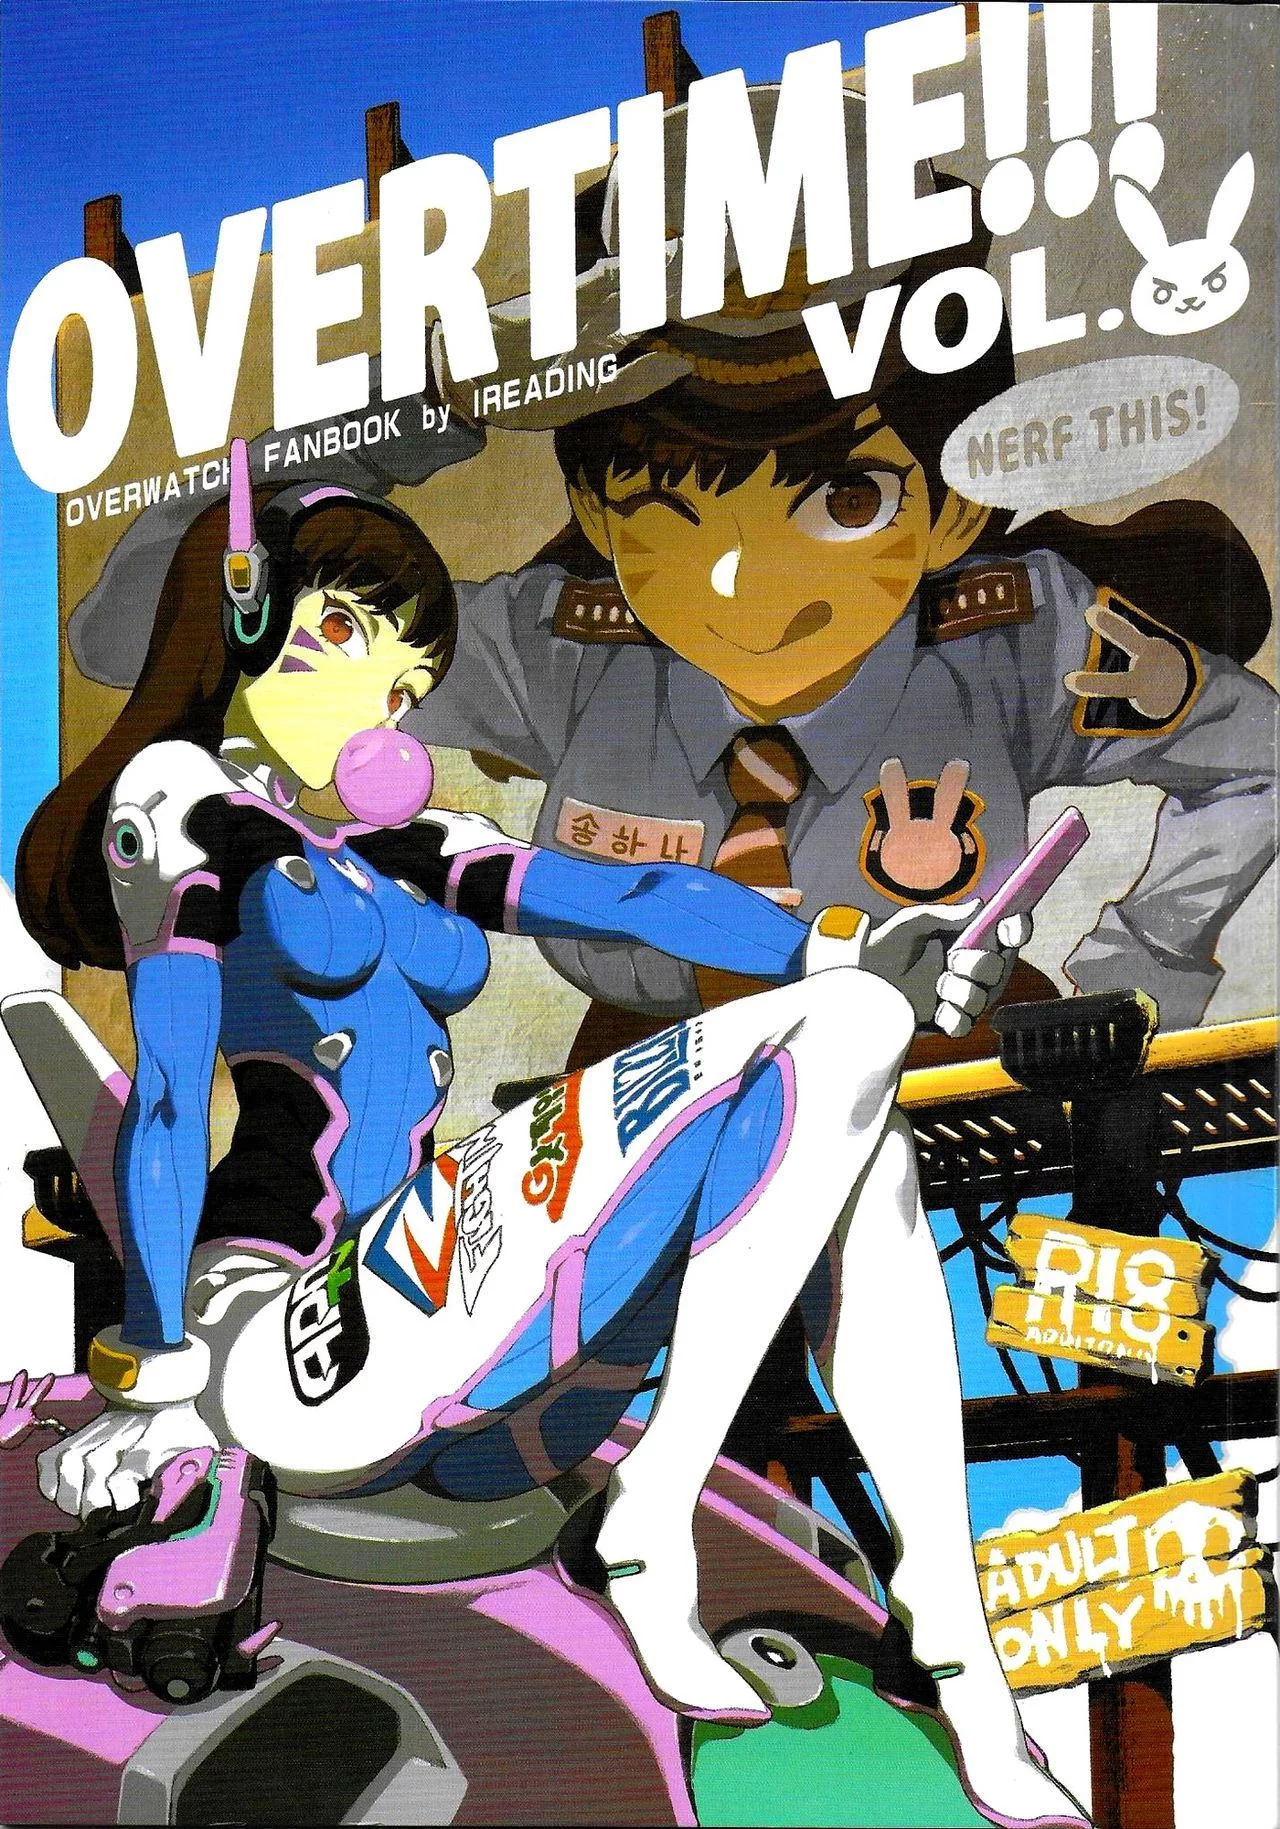 Overtime!! overwatch 2 – Fanbook